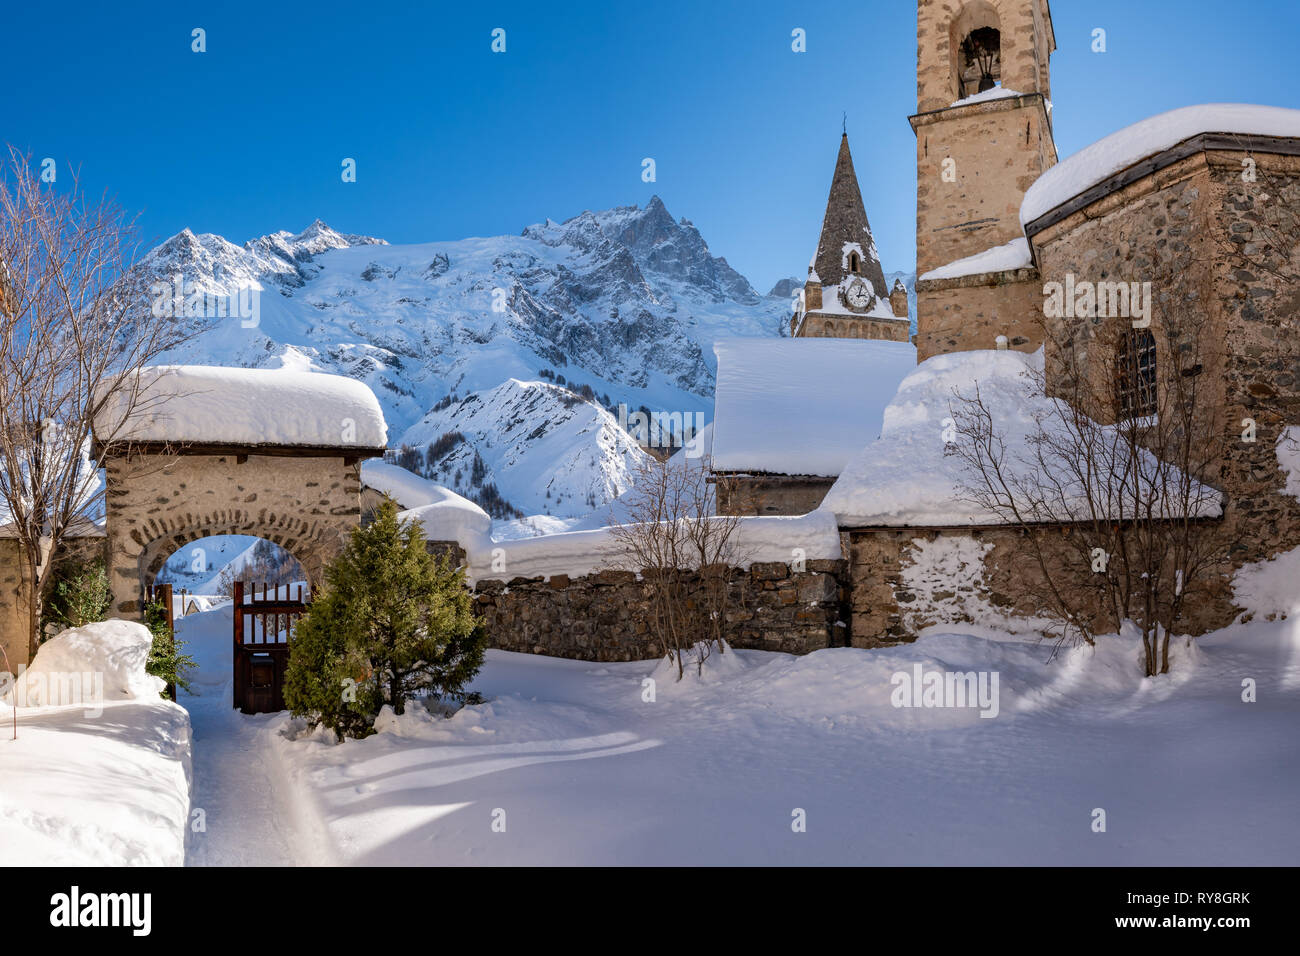 La Tumba, Hautes-Alpes, Parque Nacional de Ecrins, Francia: la aldea local de la tumba y su iglesia con la Meije el pico de la montaña en invierno Foto de stock